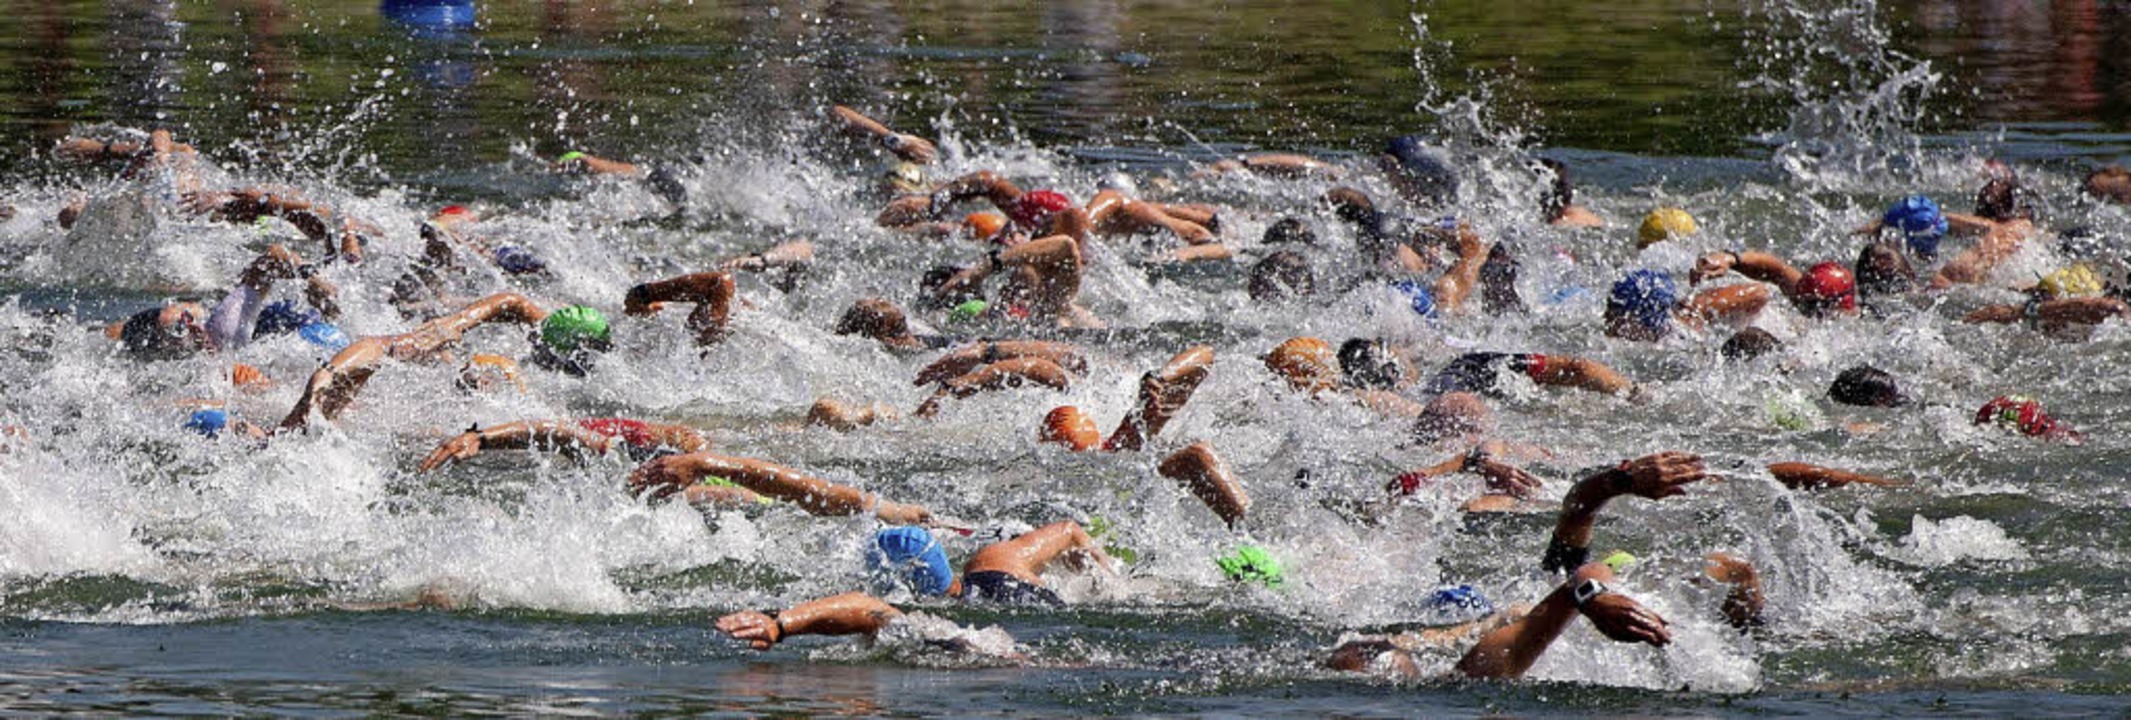 Wenn der Startschuss zum Triathlon fäl...ht das Wasser im Riegeler Müller-See.   | Foto: Martin Wendel